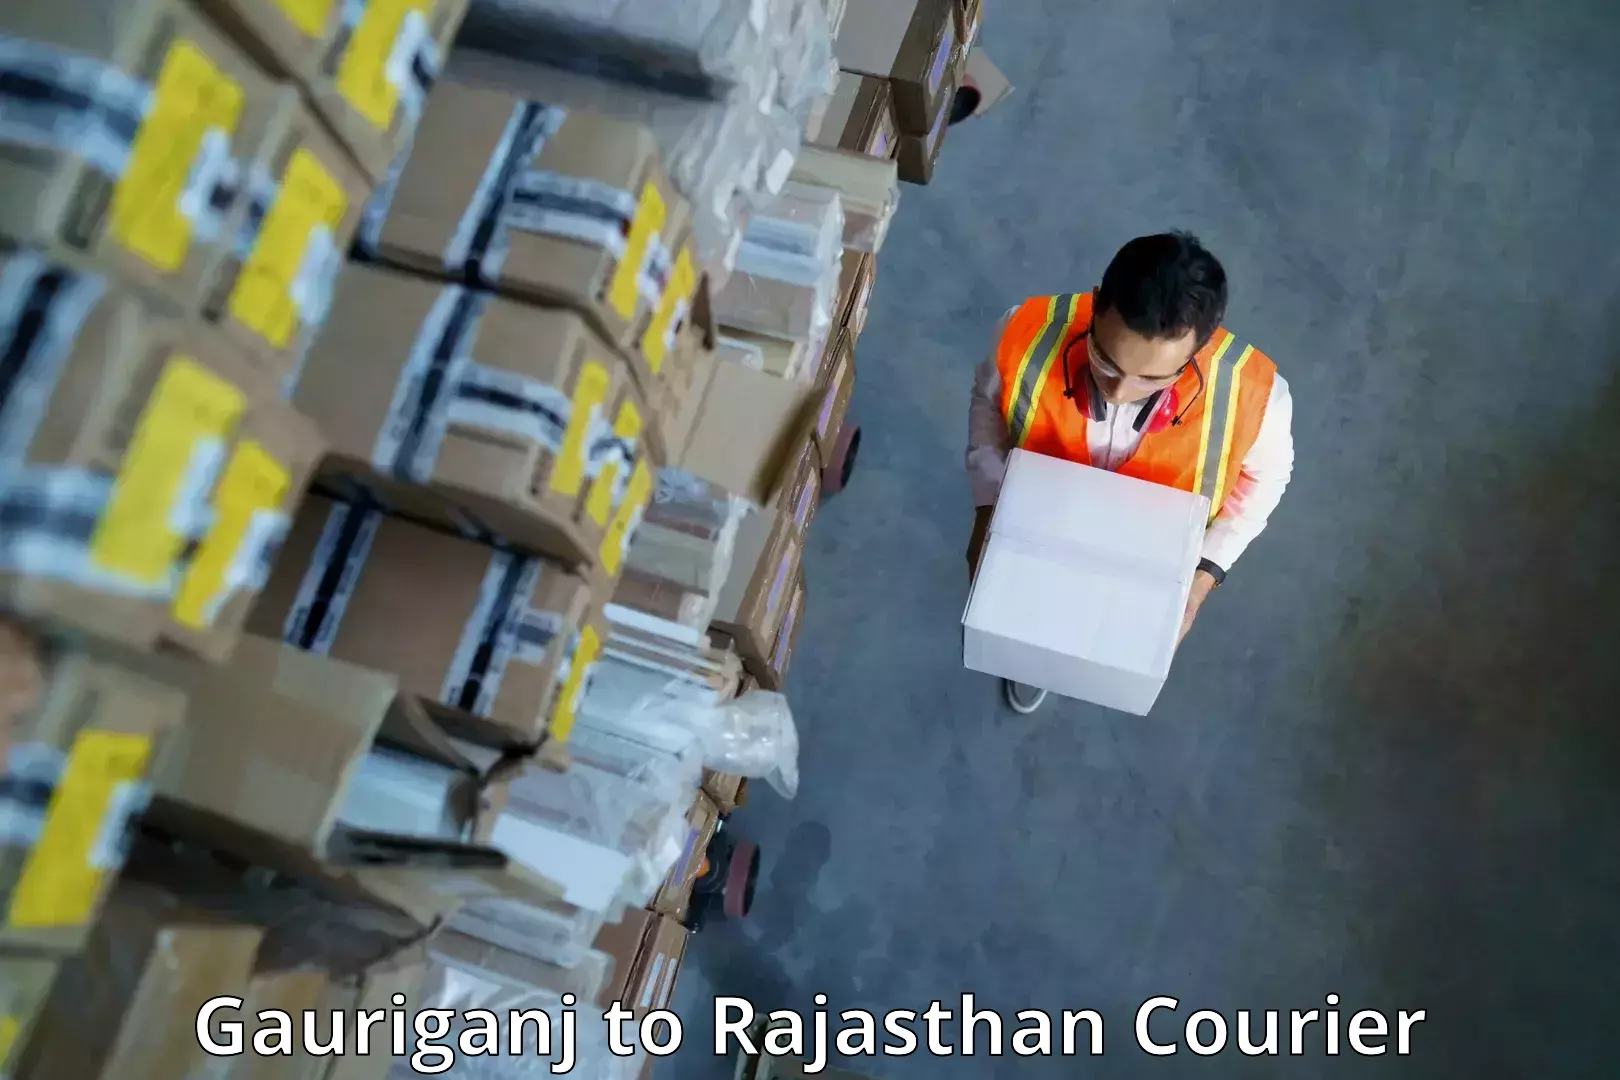 Urban courier service Gauriganj to Sardarshahr